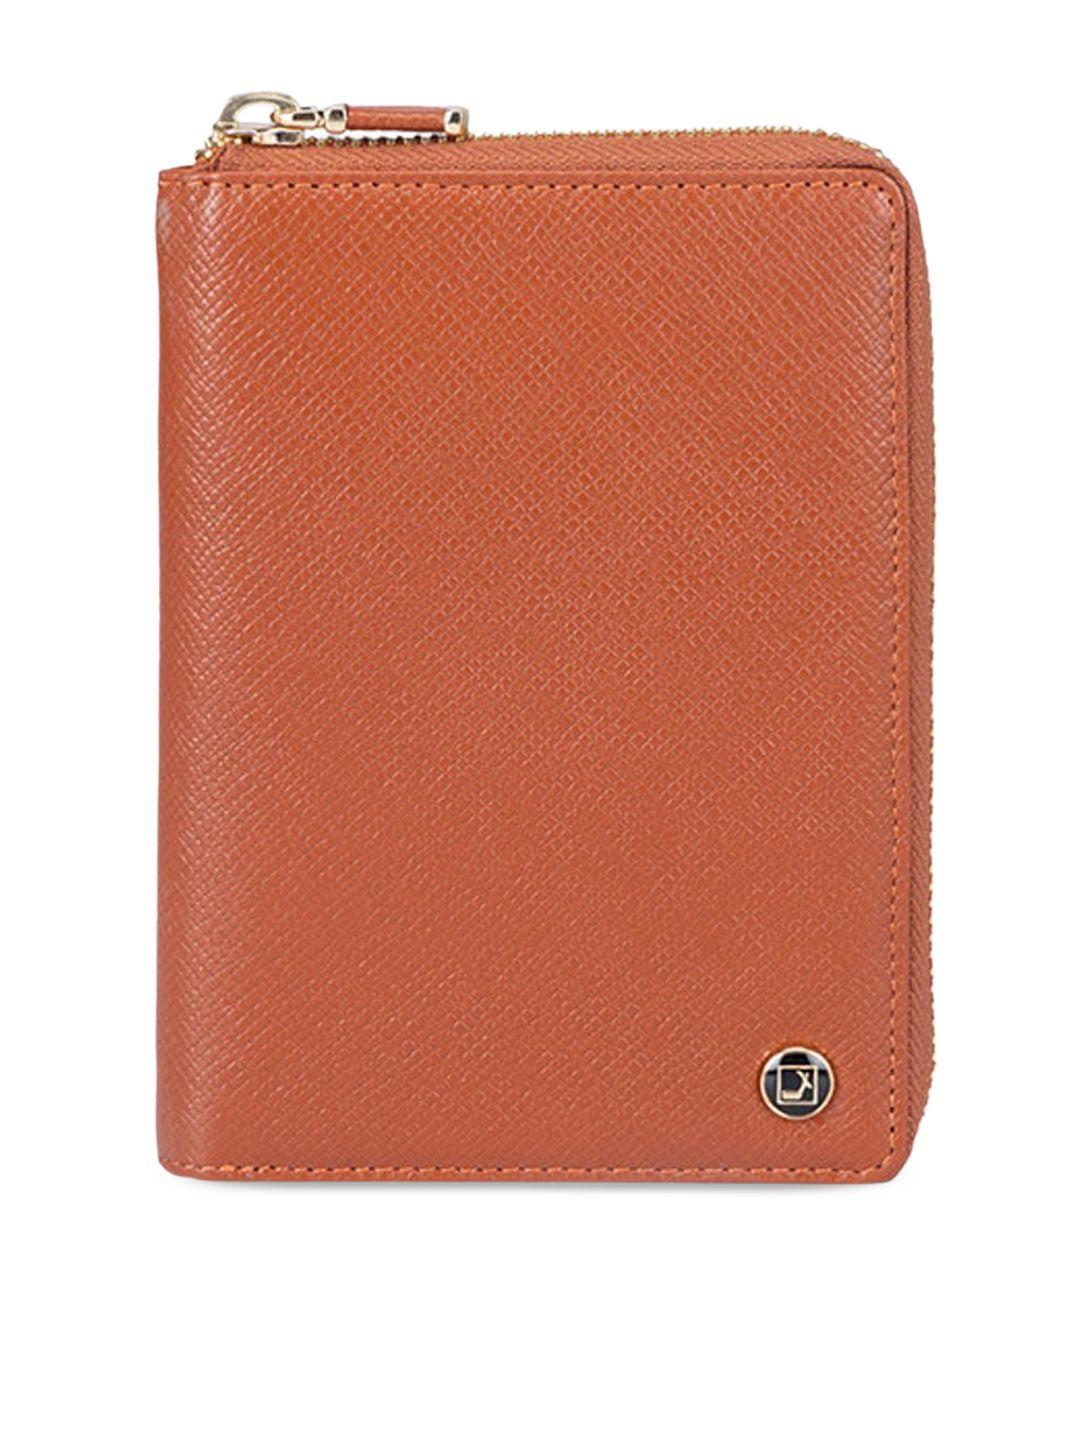 da milano genuine leather passport cover